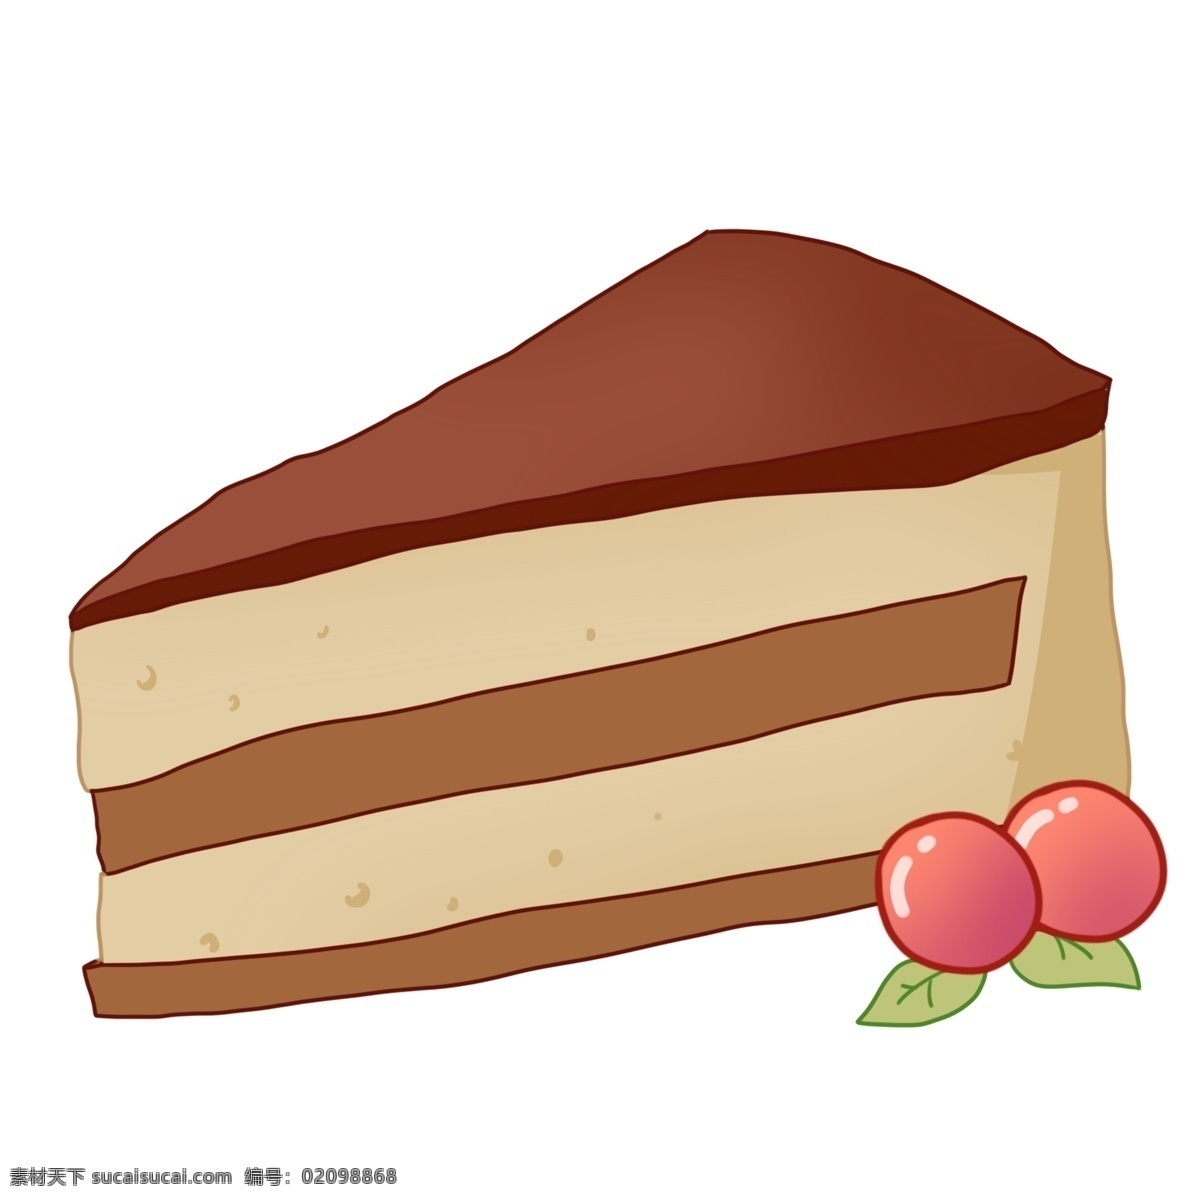 三角形 蛋糕 卡通 插画 三角形蛋糕 美食 食物 卡通蛋糕 美味的蛋糕 烘培 甜品 甜点 下午茶 零食 甜食